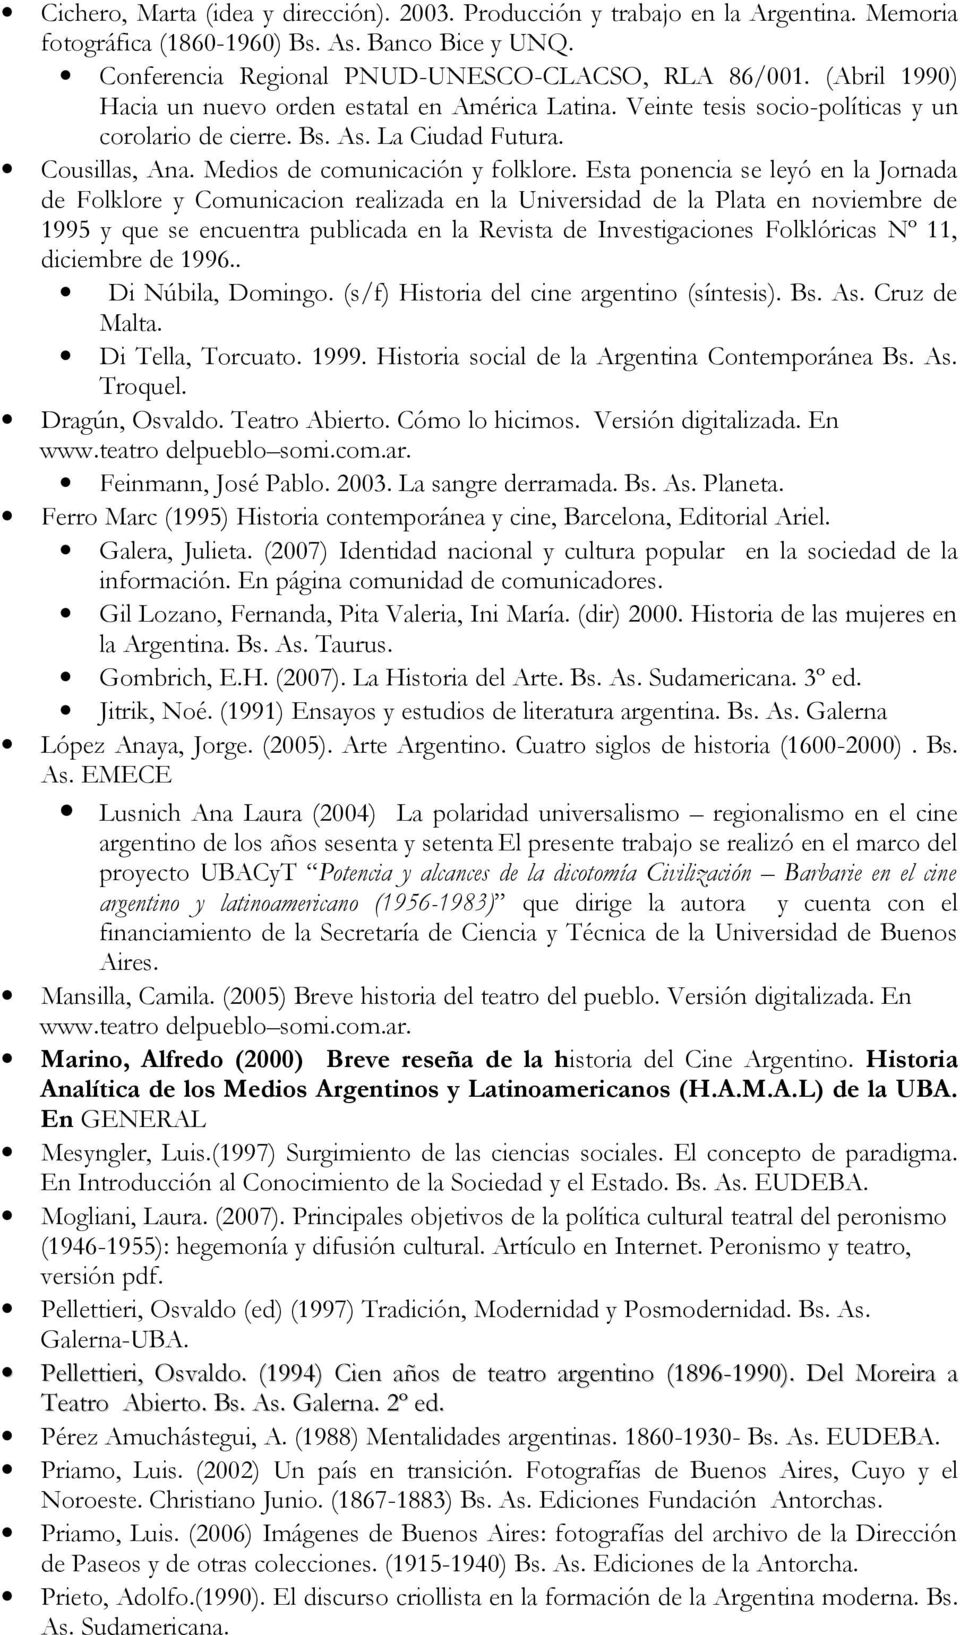 Esta ponencia se leyó en la Jornada de Folklore y Comunicacion realizada en la Universidad de la Plata en noviembre de 1995 y que se encuentra publicada en la Revista de Investigaciones Folklóricas